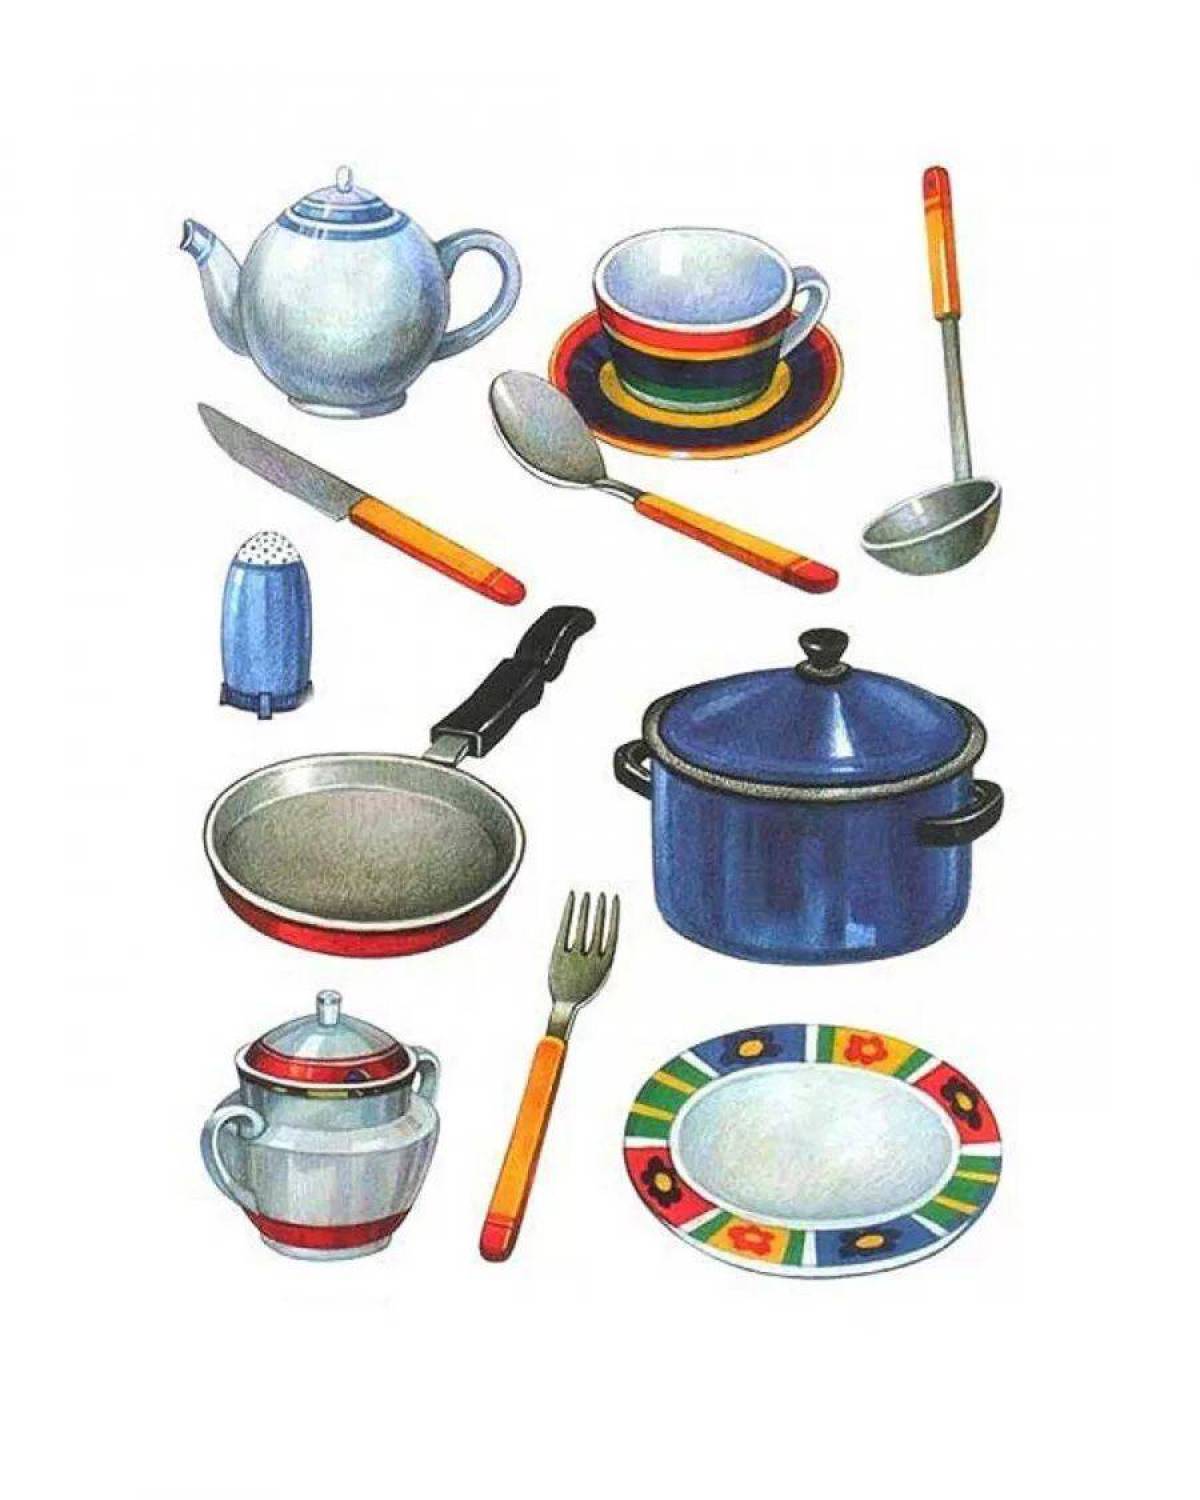 Картинки предметов. Посуда для дошкольников. Предметы кухонной посуды. Кухонная посуда занятие для детей. Кухонные предметы для детей.